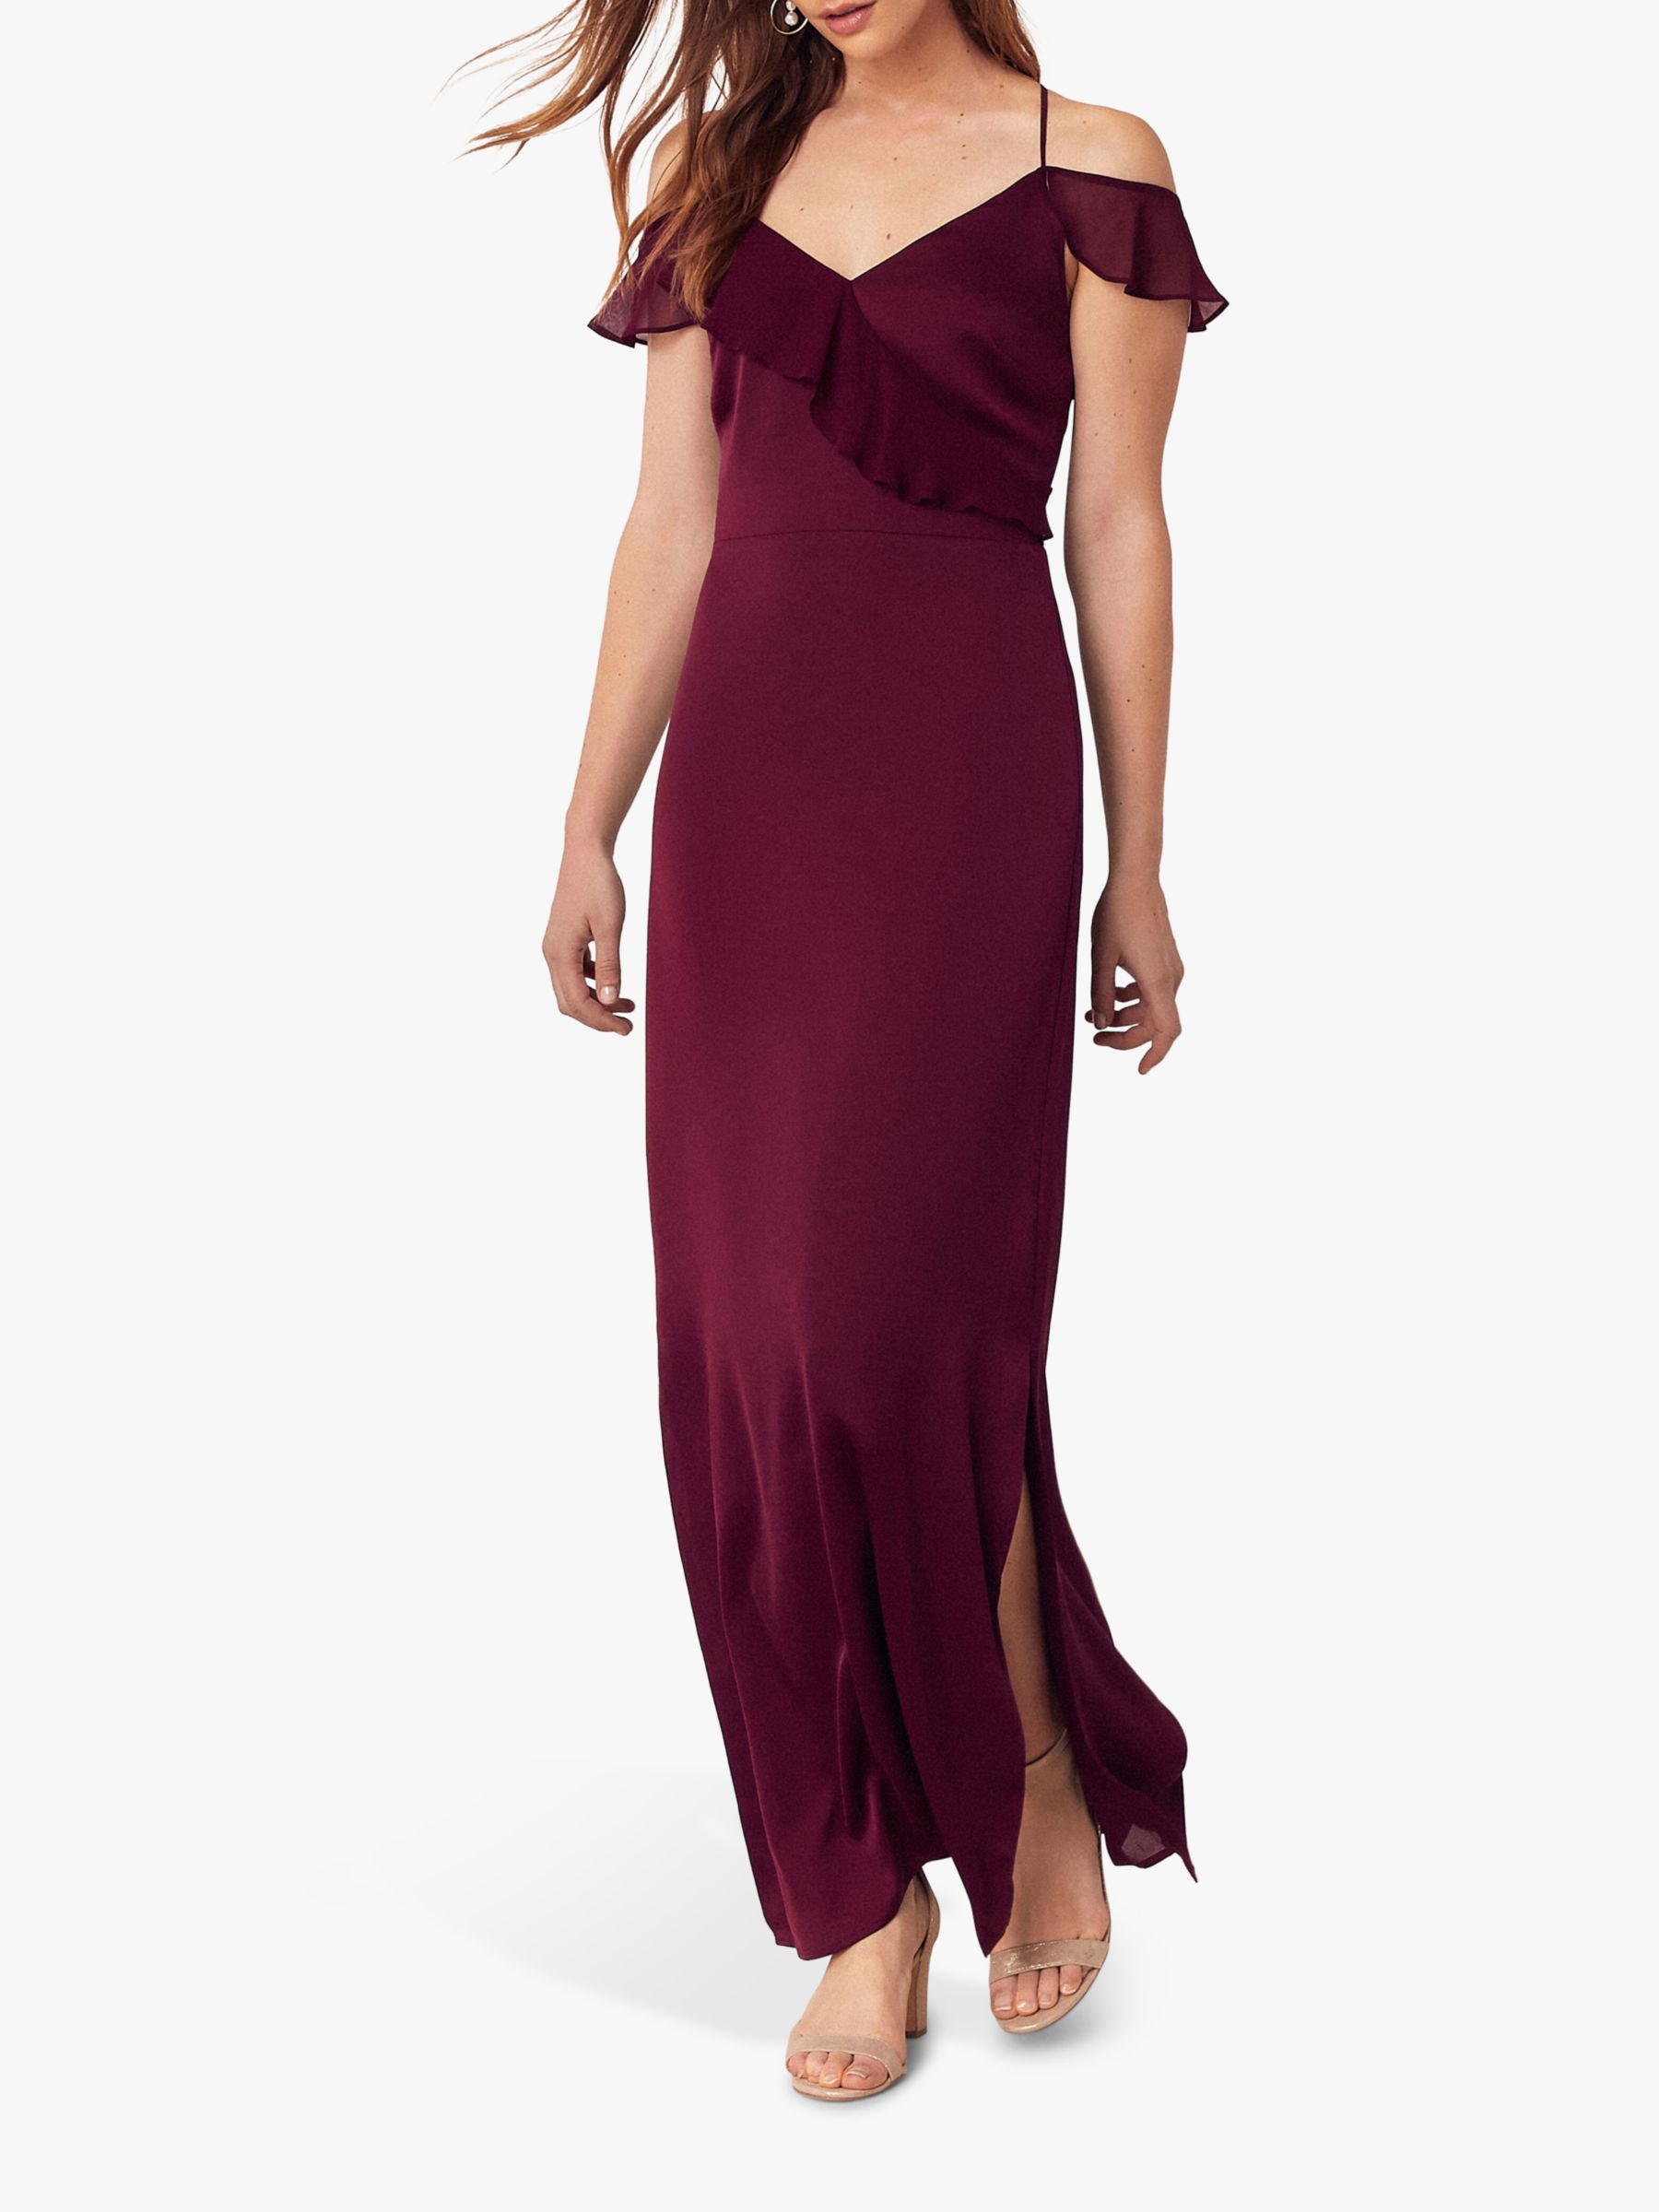 oasis burgundy dress